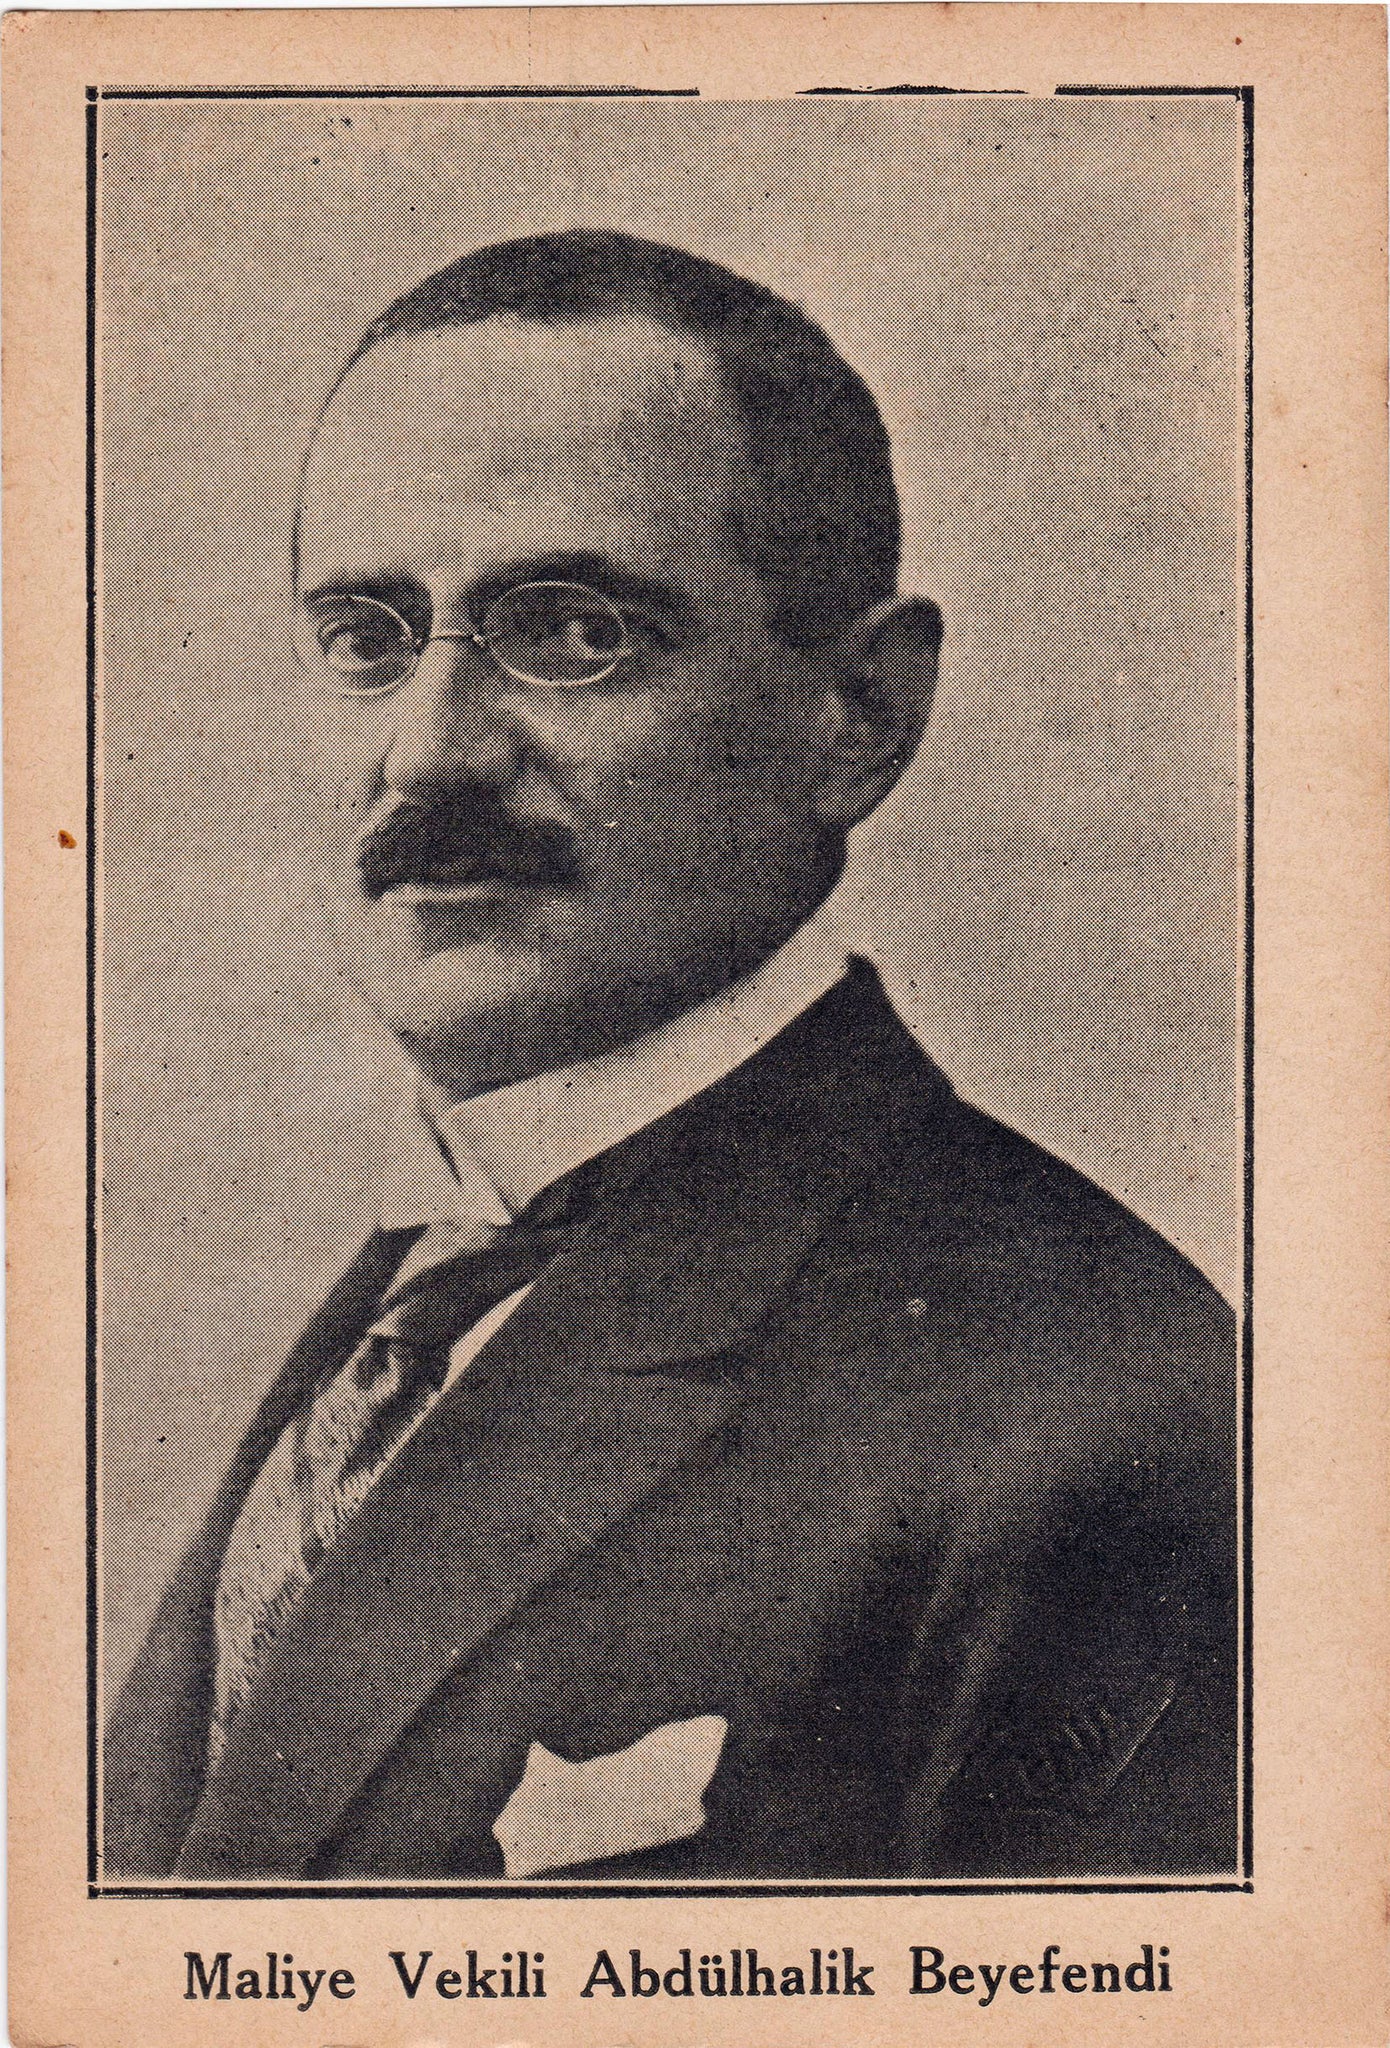 Maliye Vekili Abdülhalîk Beyefendi, Mustafa Abdülhalîk Renda 1881-1957, Osmanlı Devletinin son dönemleri ve Cumhuriyet döneminde önemli görevler üstlenmiş Türk bürokrat